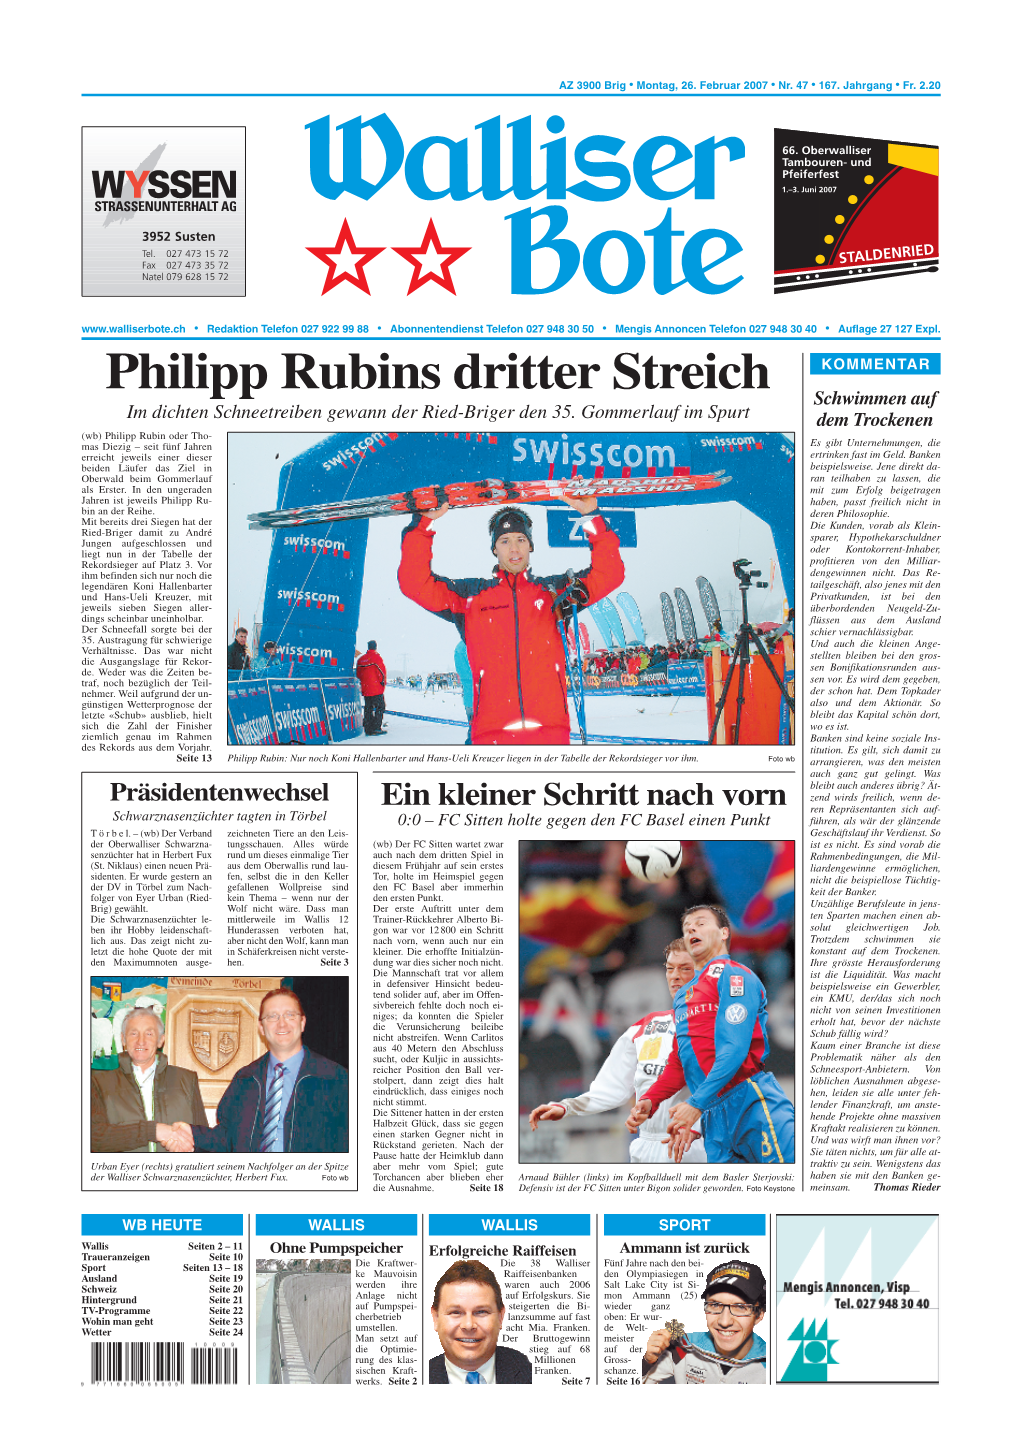 Philipp Rubins Dritter Streich Schwimmen Auf Im Dichten Schneetreiben Gewann Der Ried-Briger Den 35